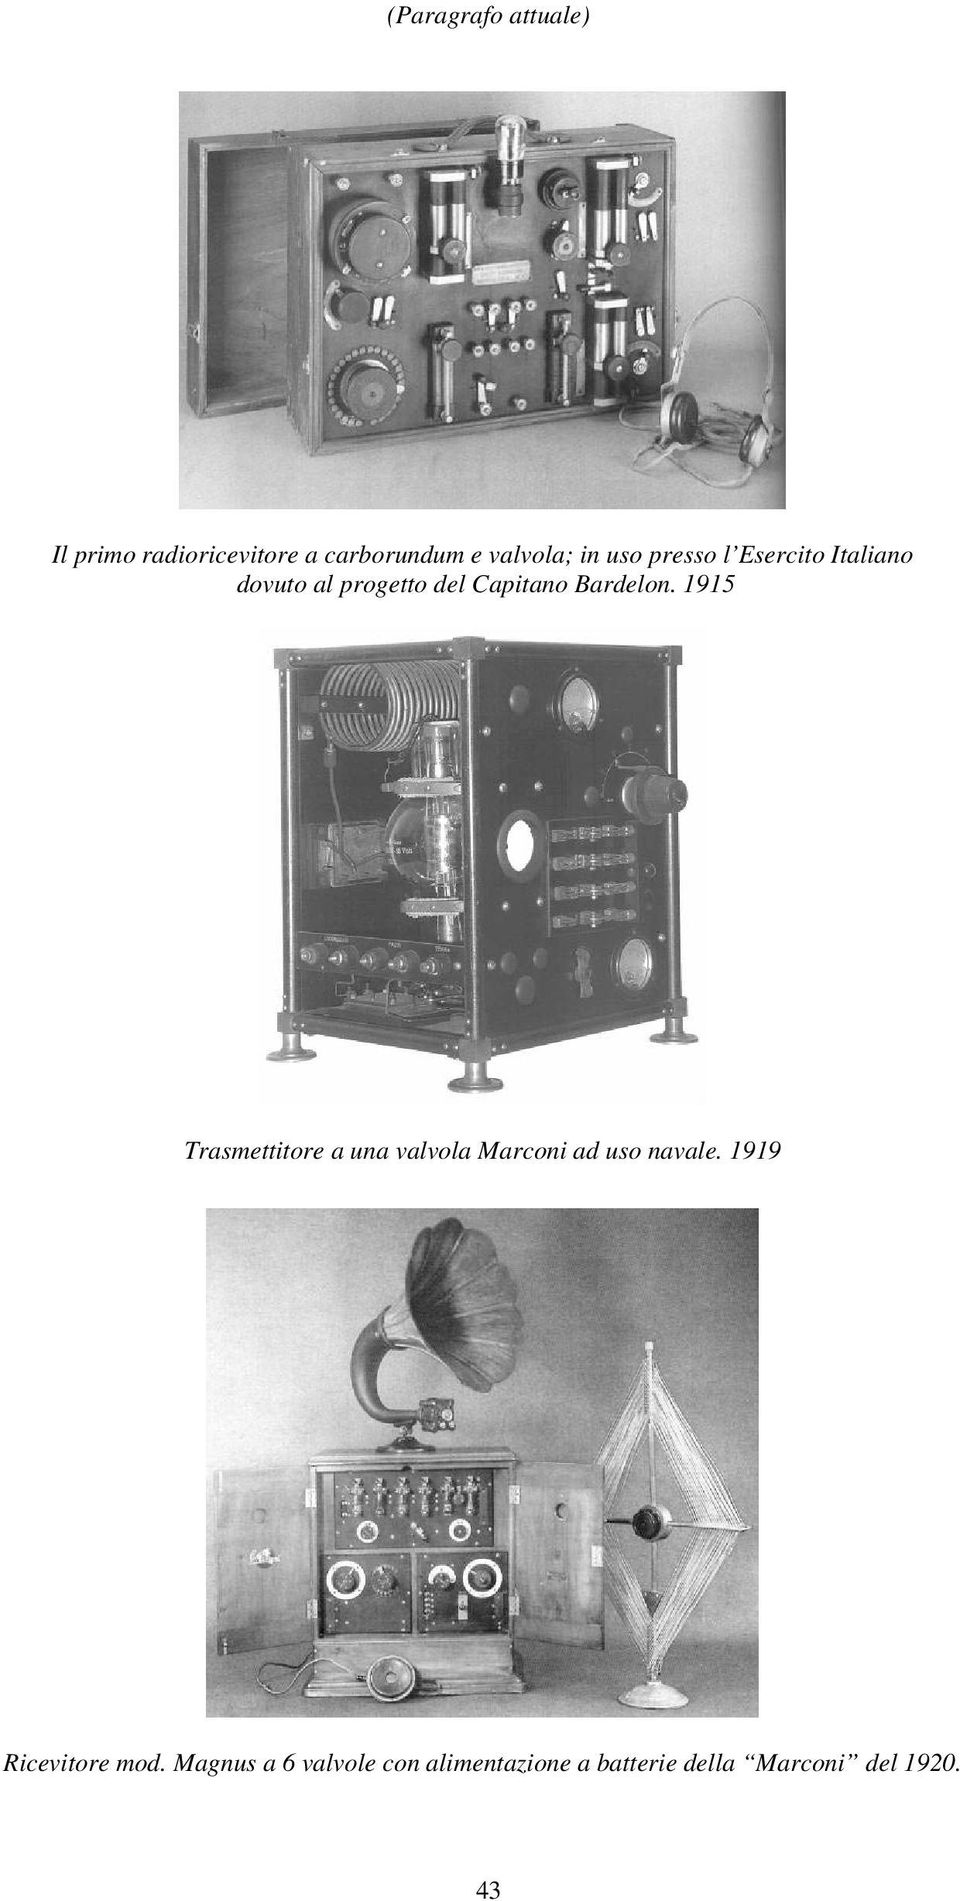 1915 Trasmettitore a una valvola Marconi ad uso navale.